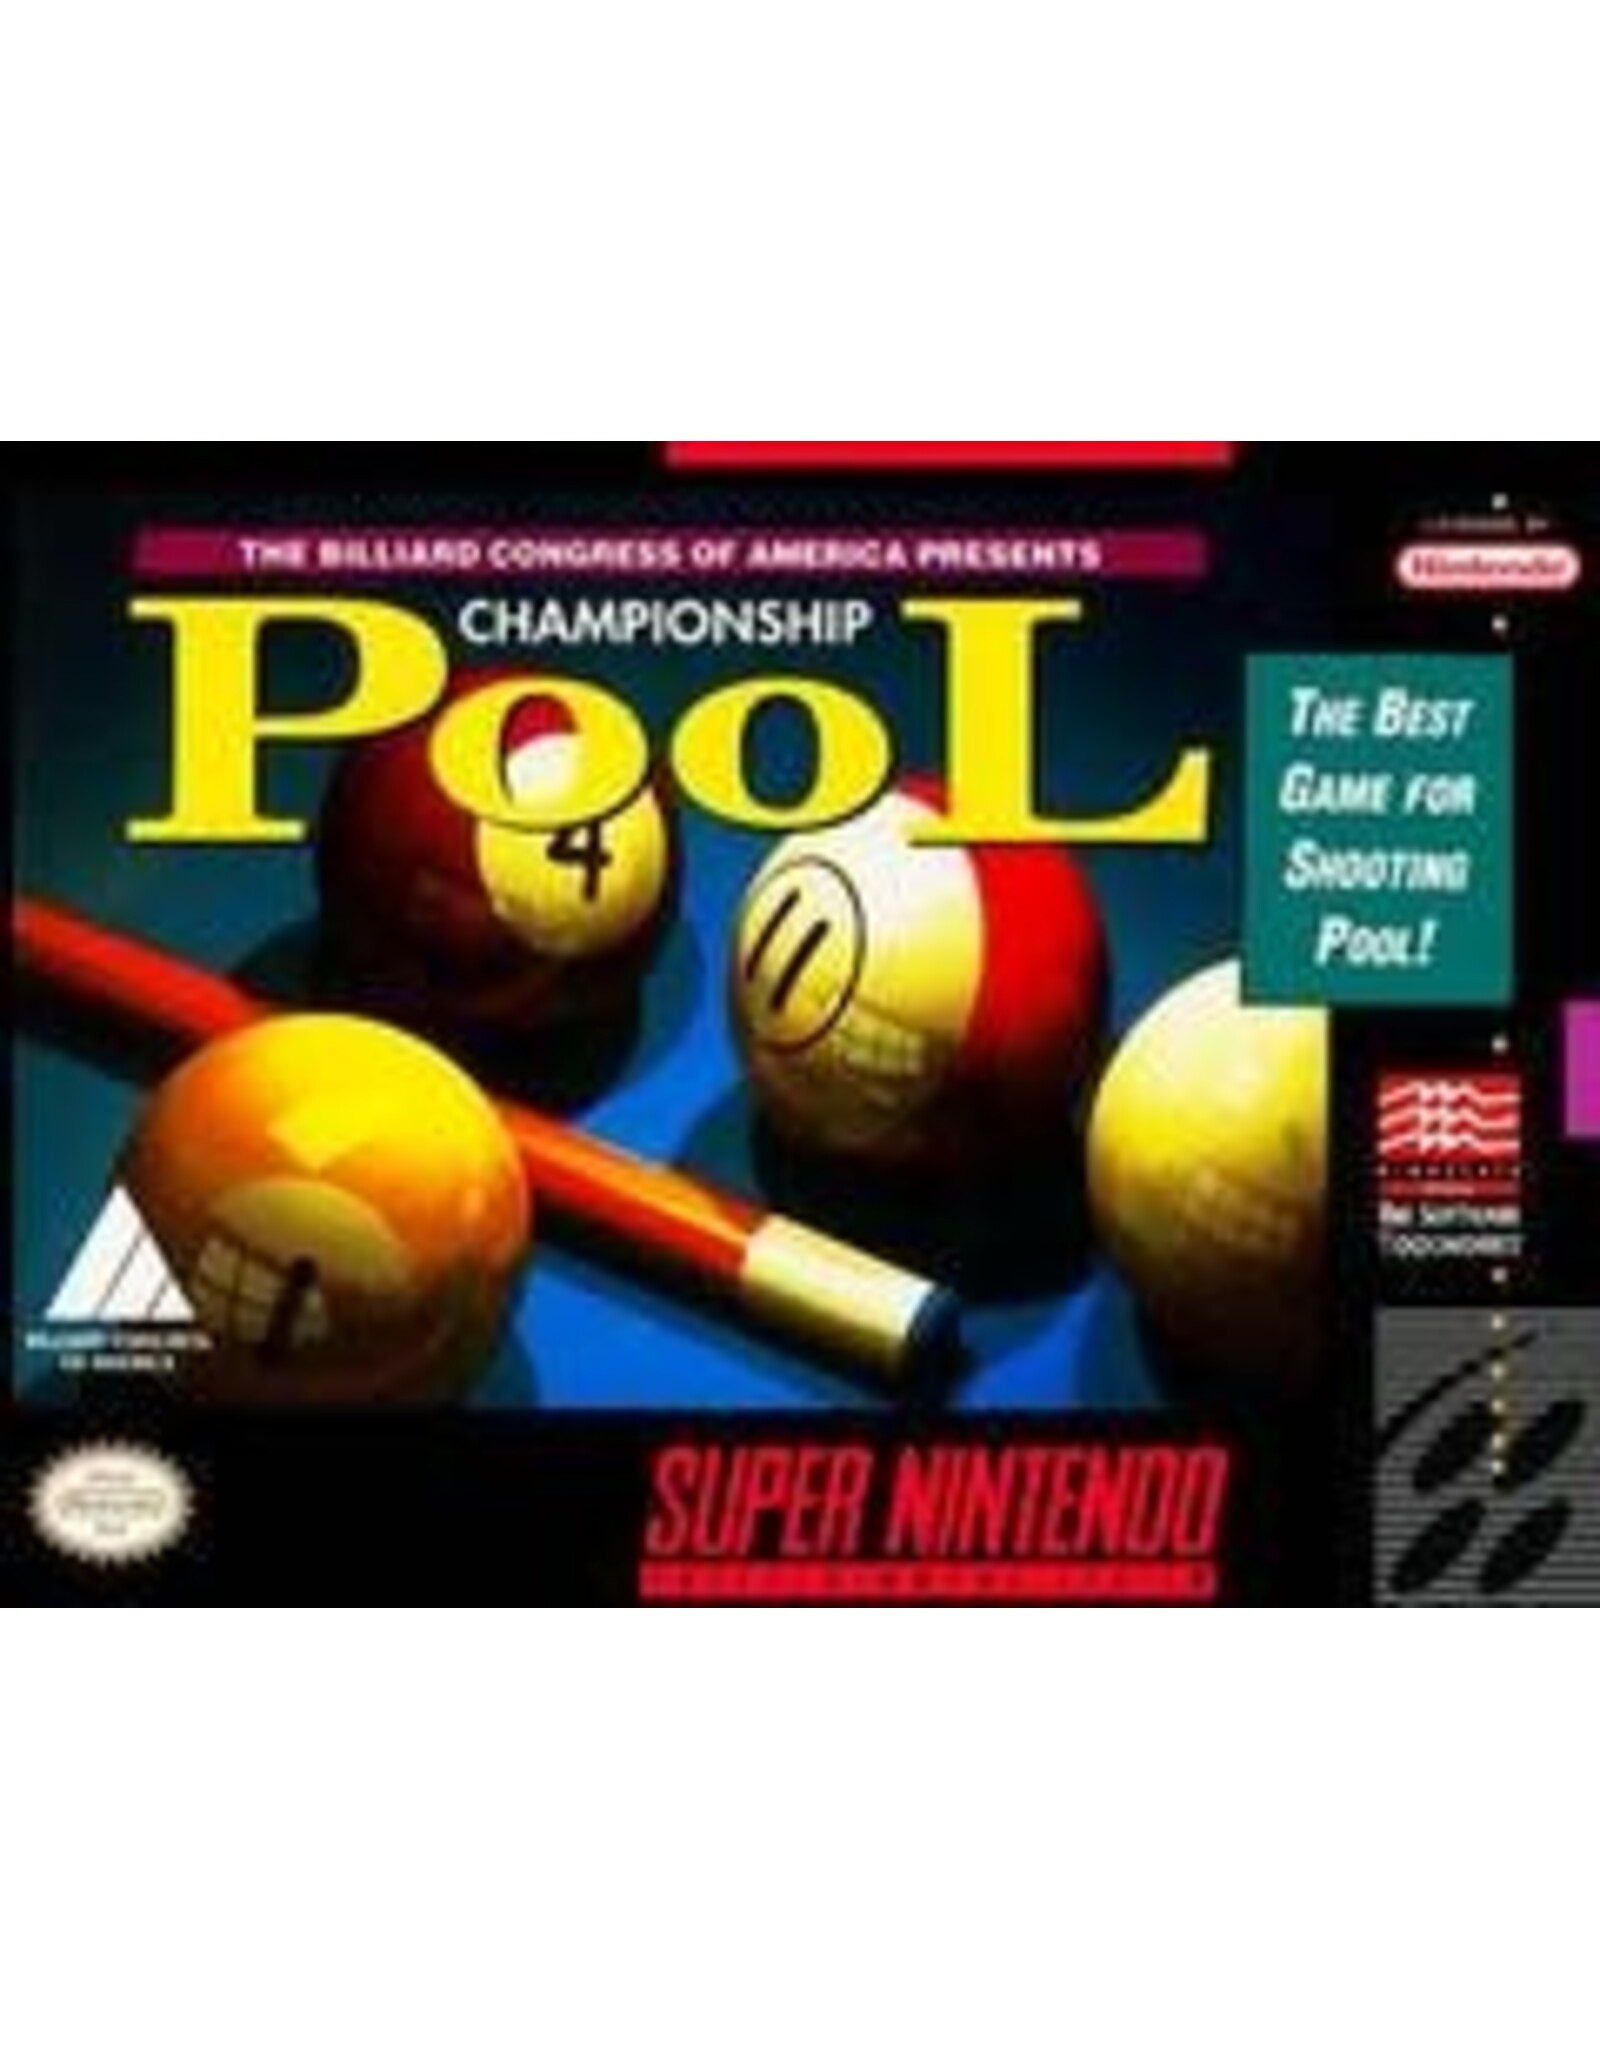 Super Nintendo Championship Pool (Boxed, No Manual, Damaged Box)